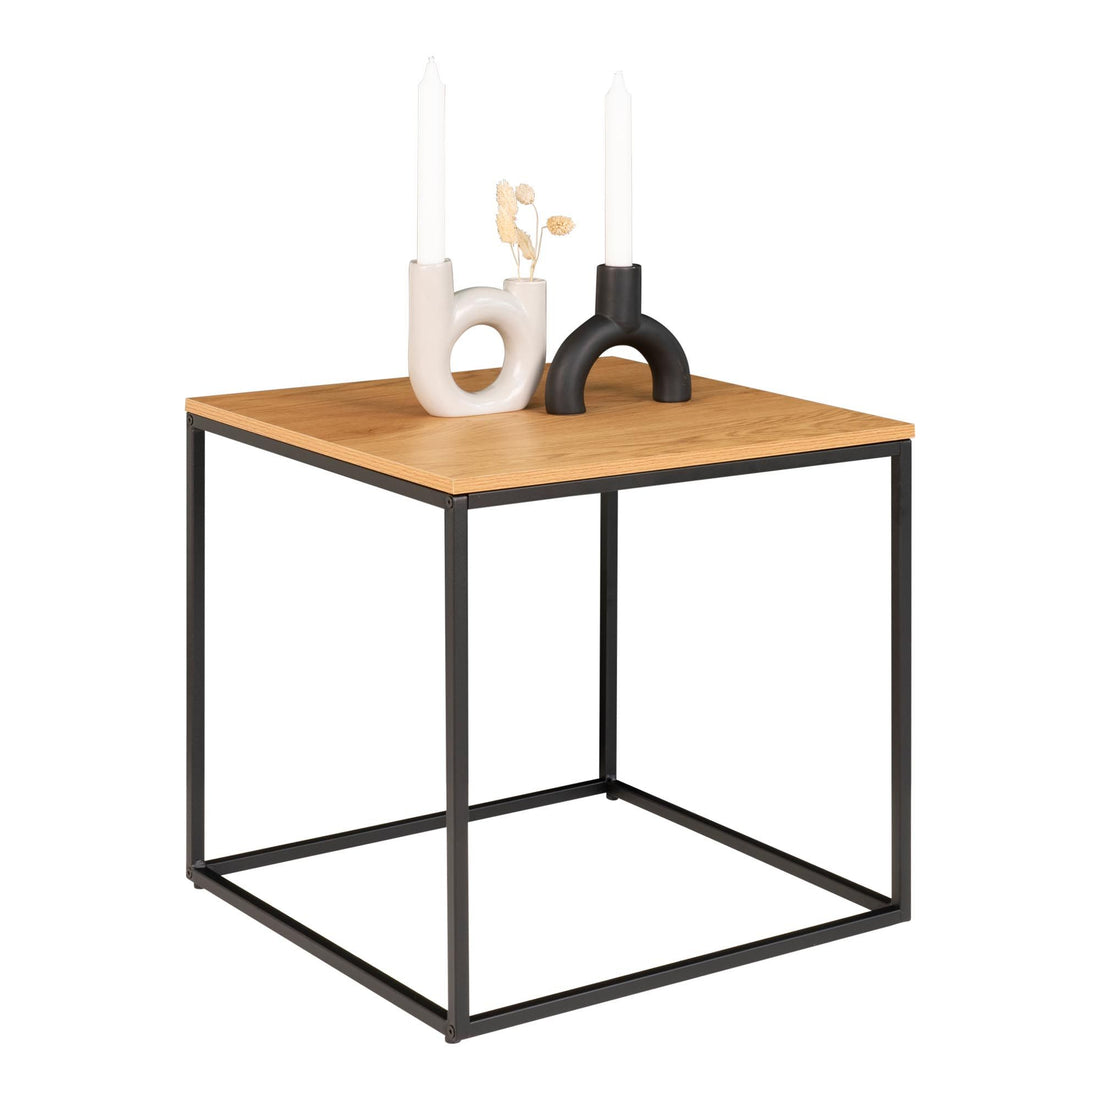 Vita hjørnebord - hjørnebord med svart ramme og eik Look Table Top 45x45x45 cm - 1 - PCS